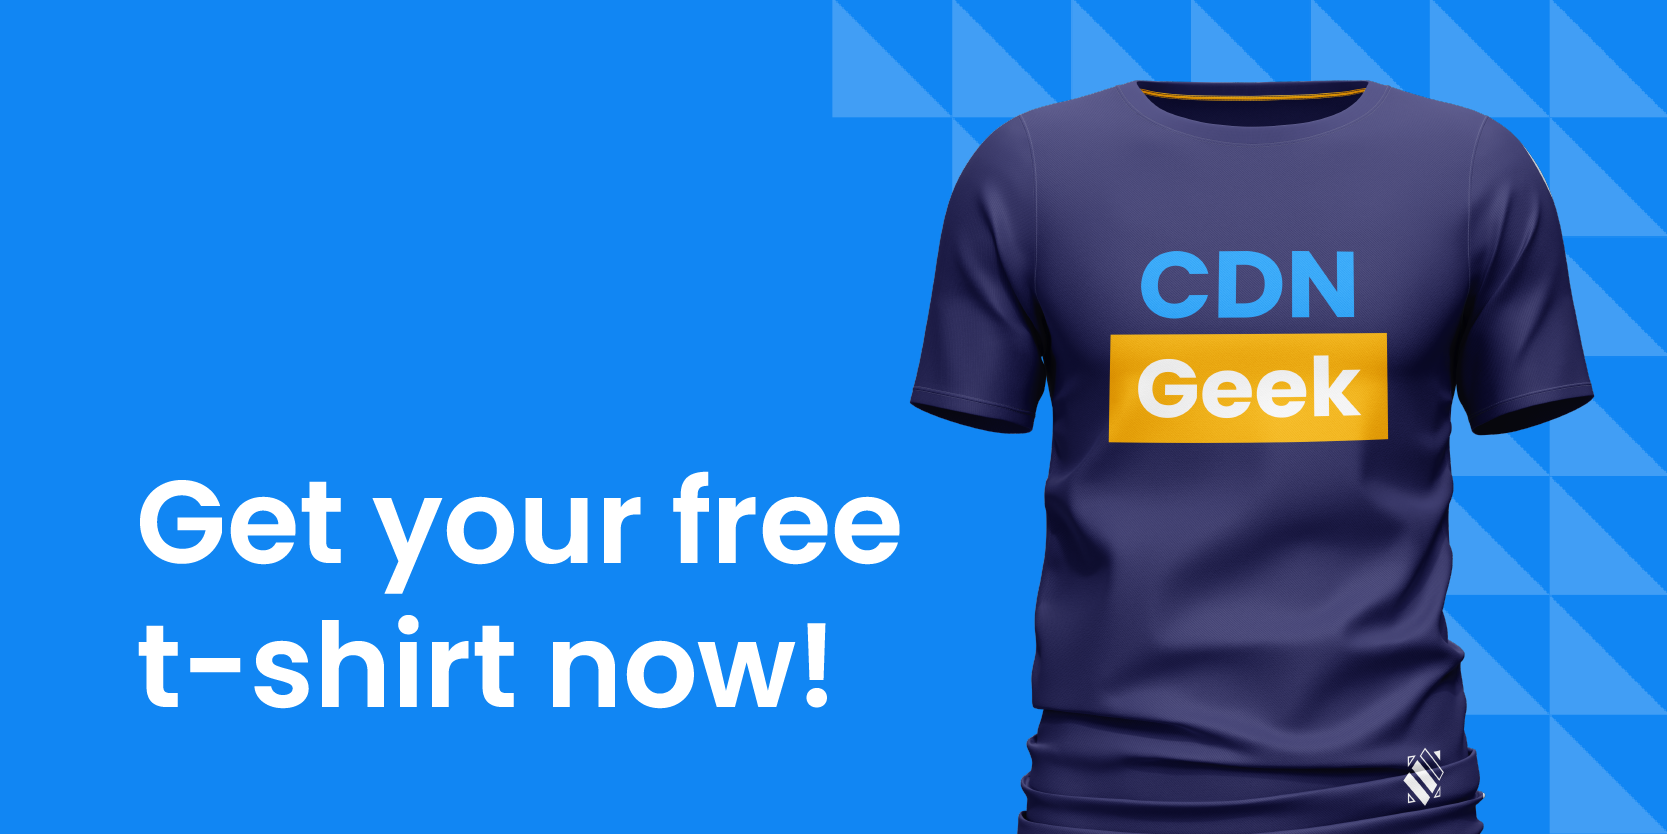 Get your free CDN Geek t-shirt here!